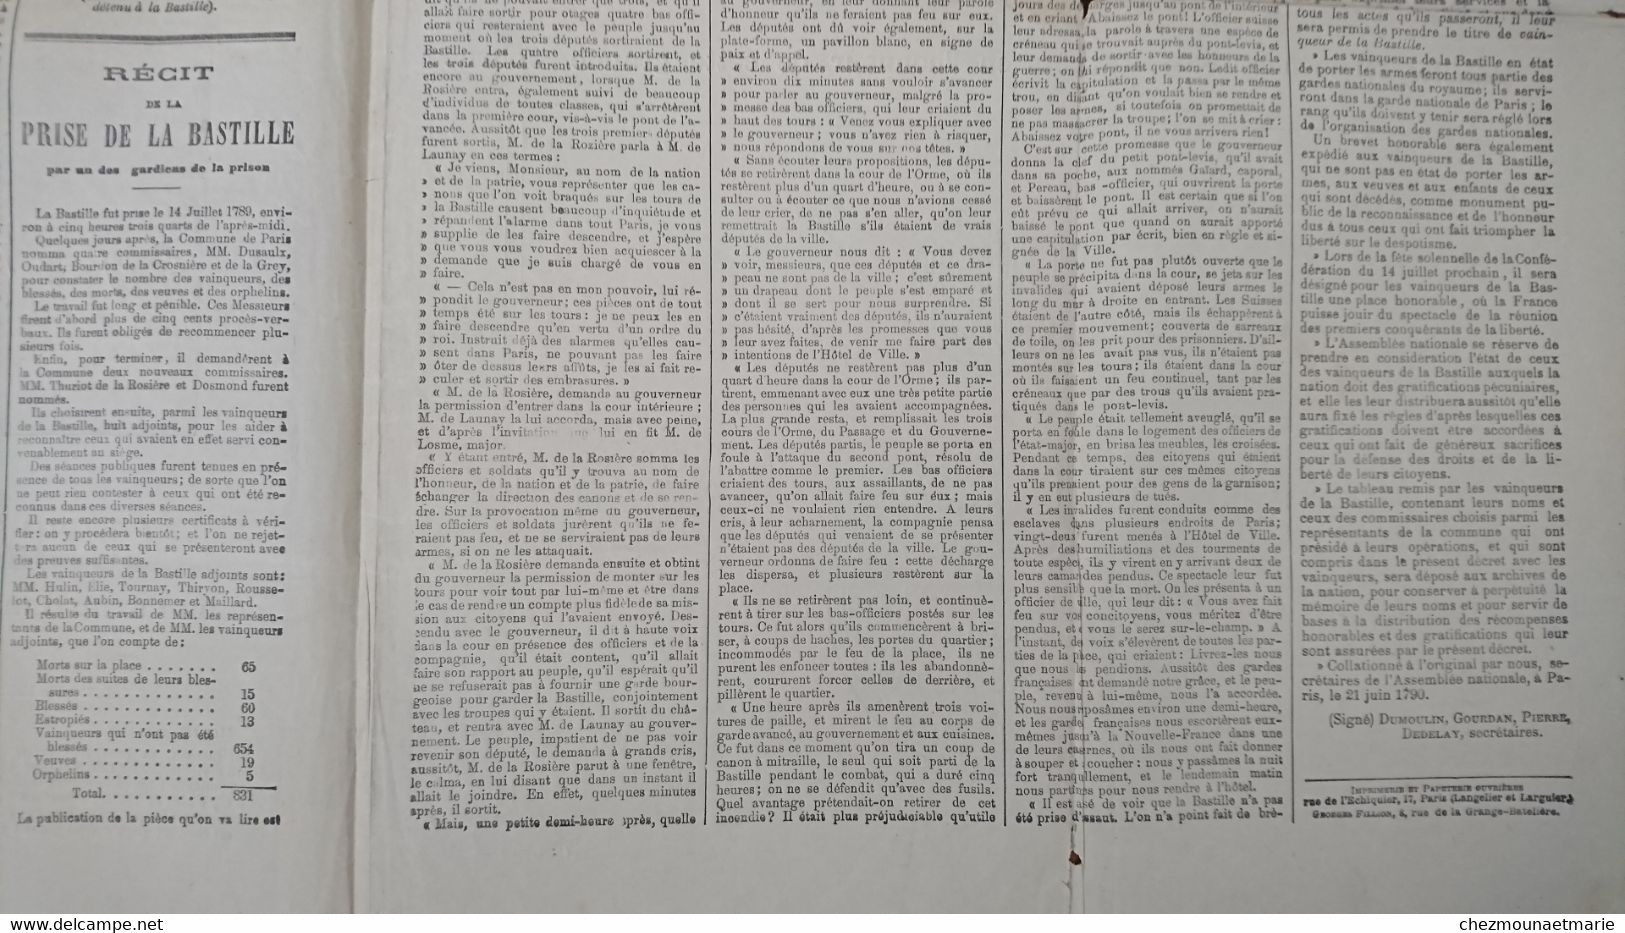 LE PETIT NORD JOURNAL POLITIQUE - SUPPLEMENT SUR LE 12 ET 14 JUILLET 1789 - Non Classés